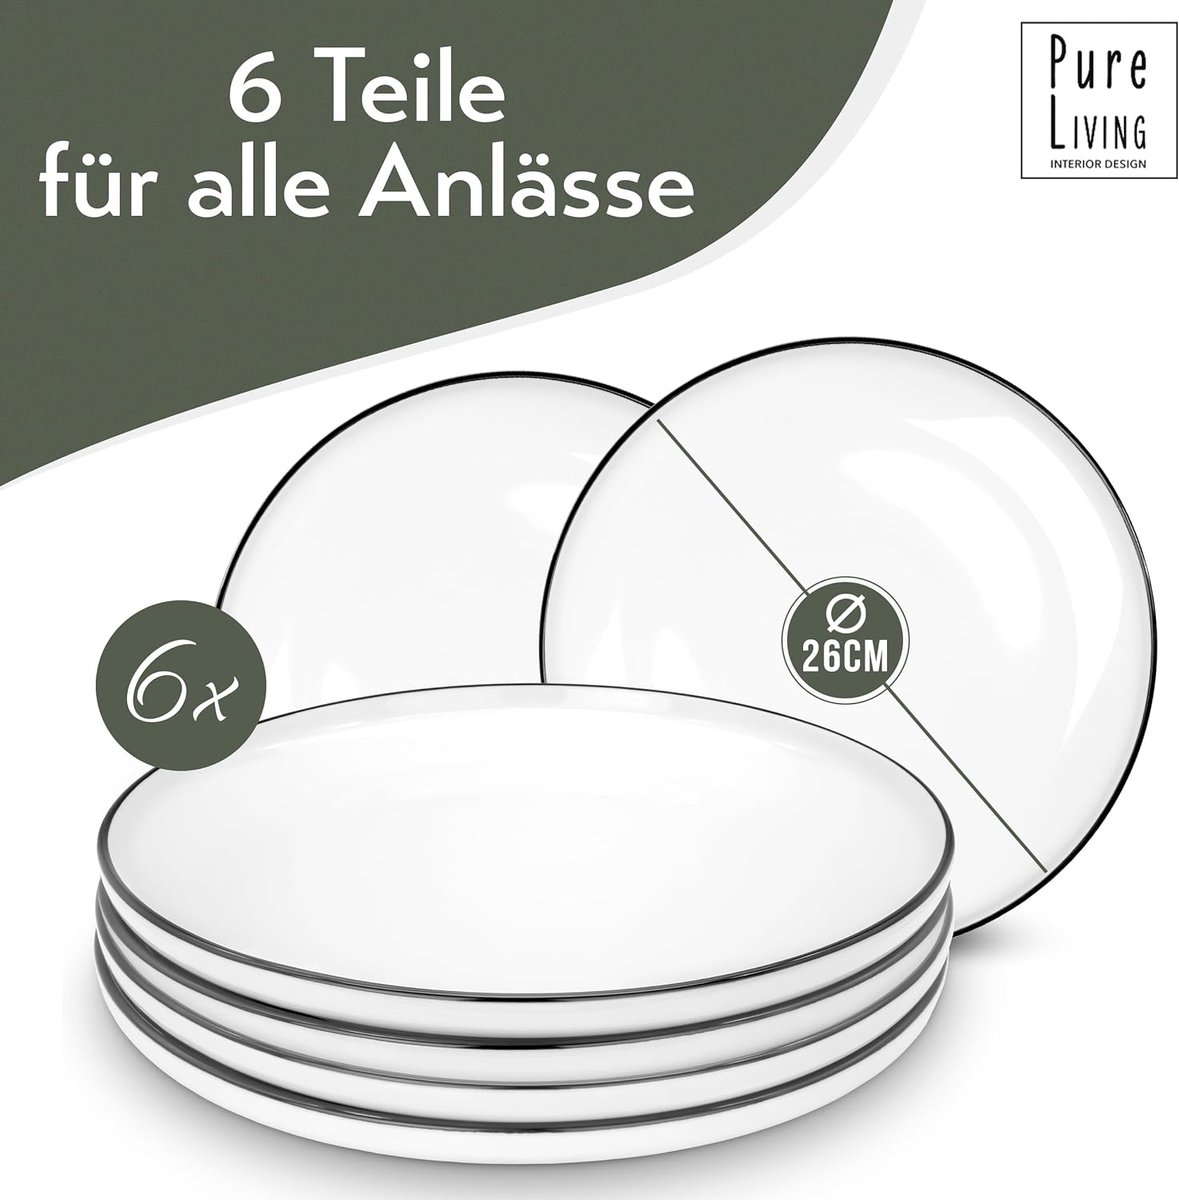 Pure Living Set van 6 porseleinen borden, groot, wit, Scandinavisch design, vaatwasmachinebestendig, stijlvolle bordenset voor 6 personen, platte borden, eetborden, serviesset